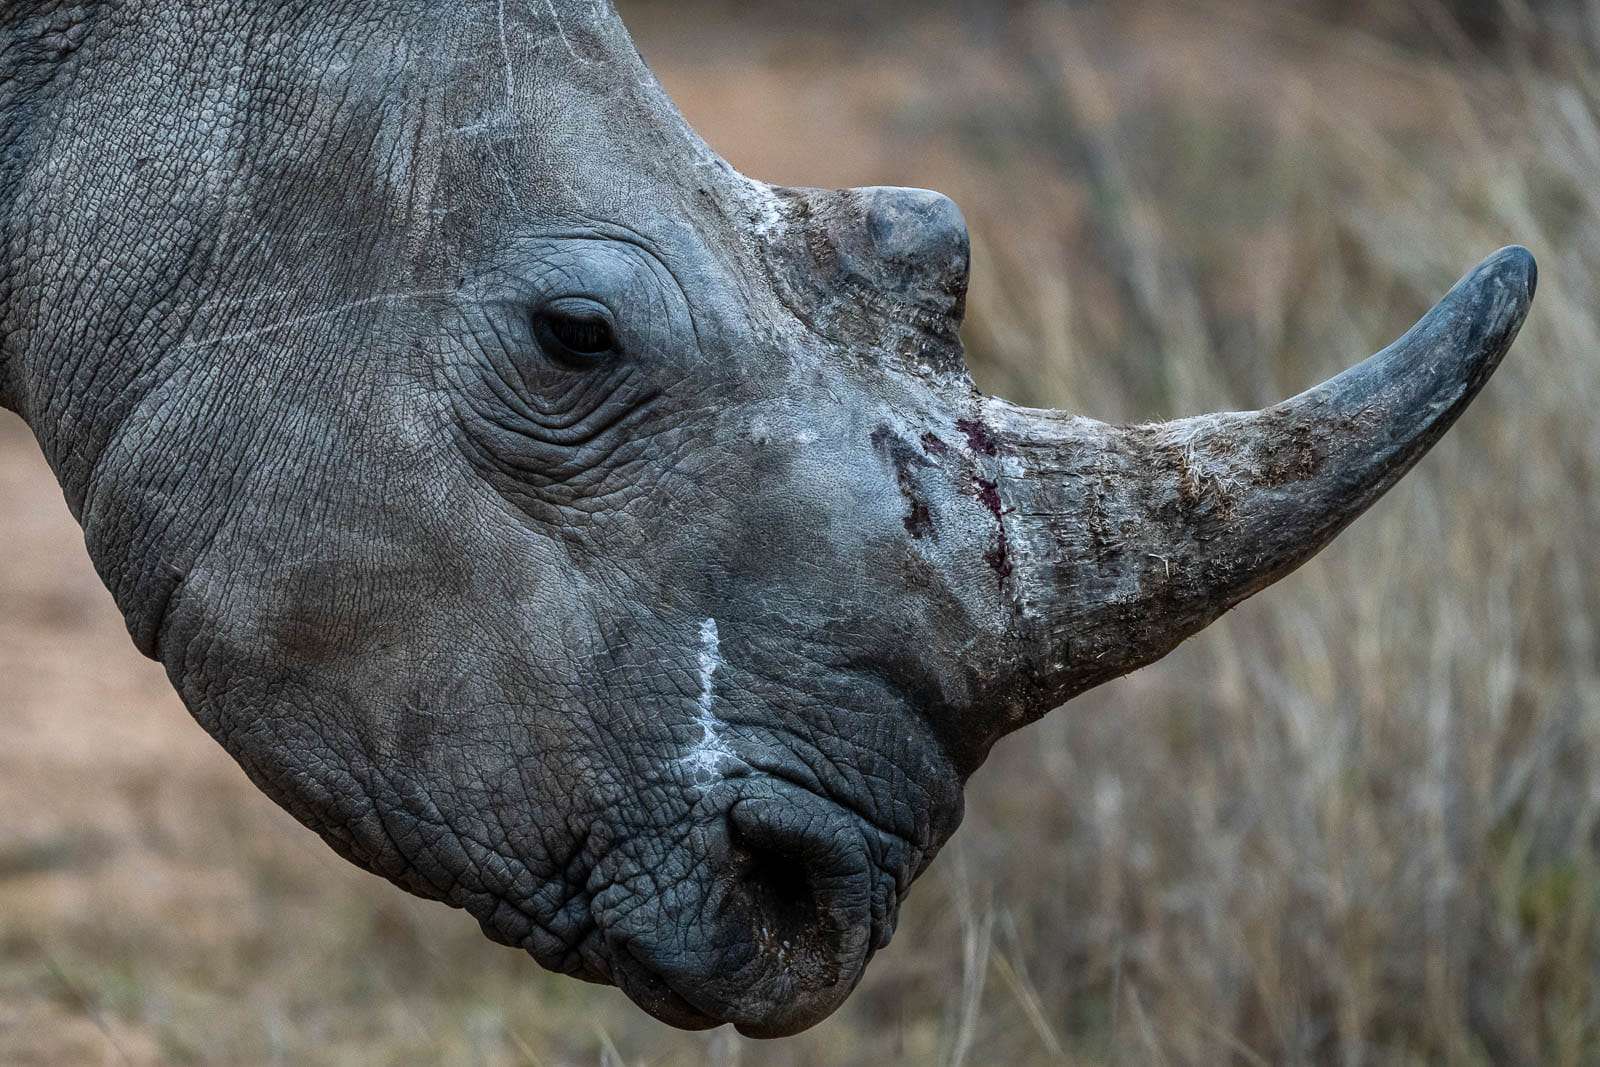 Fotoreise durch die Wildnis Südafrikas. Wir sind alle begeistert, diese Nashörner aus kurzem Abstand beobachten zu können.